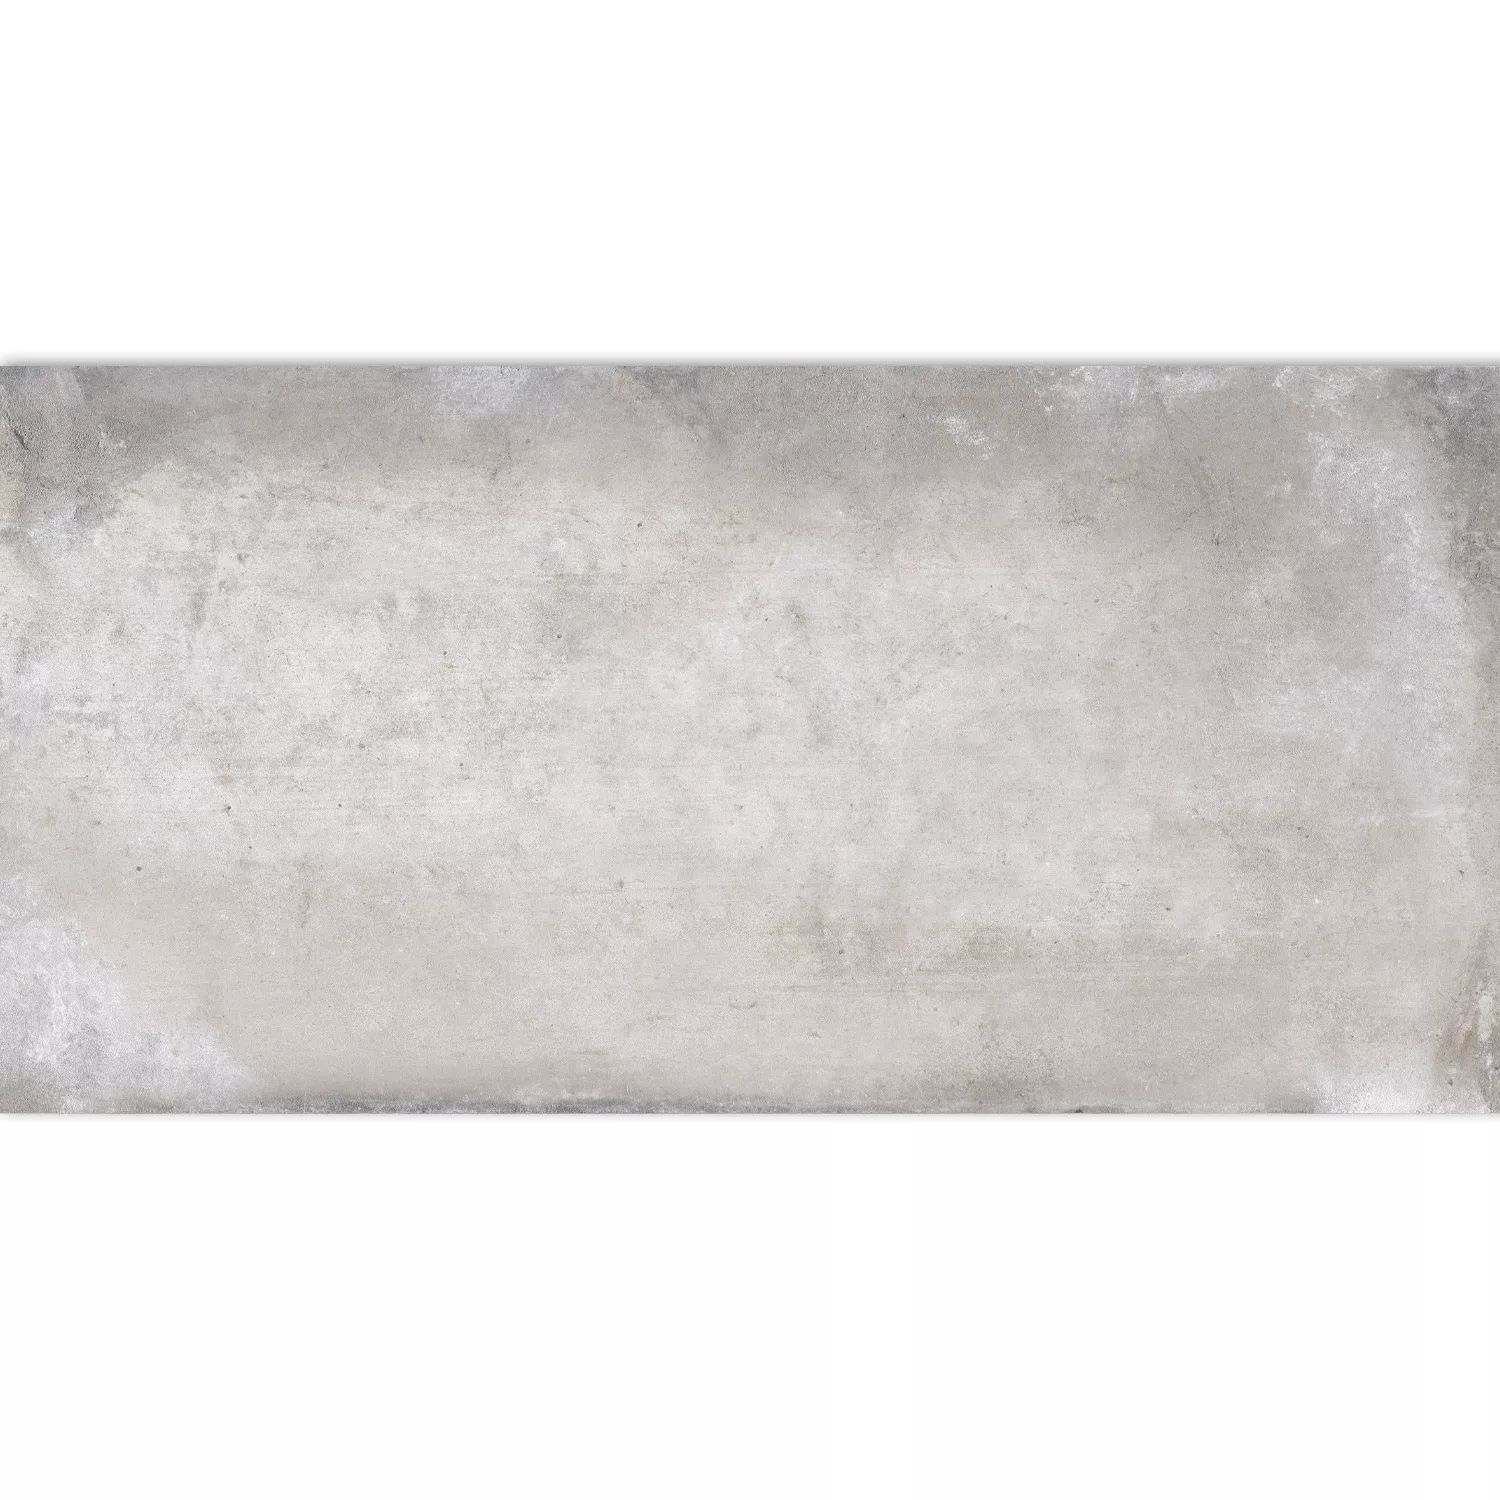 Πλακάκι Δαπέδου Εμφάνιση Tσιμέντου Maryland Γκρί 30x60cm